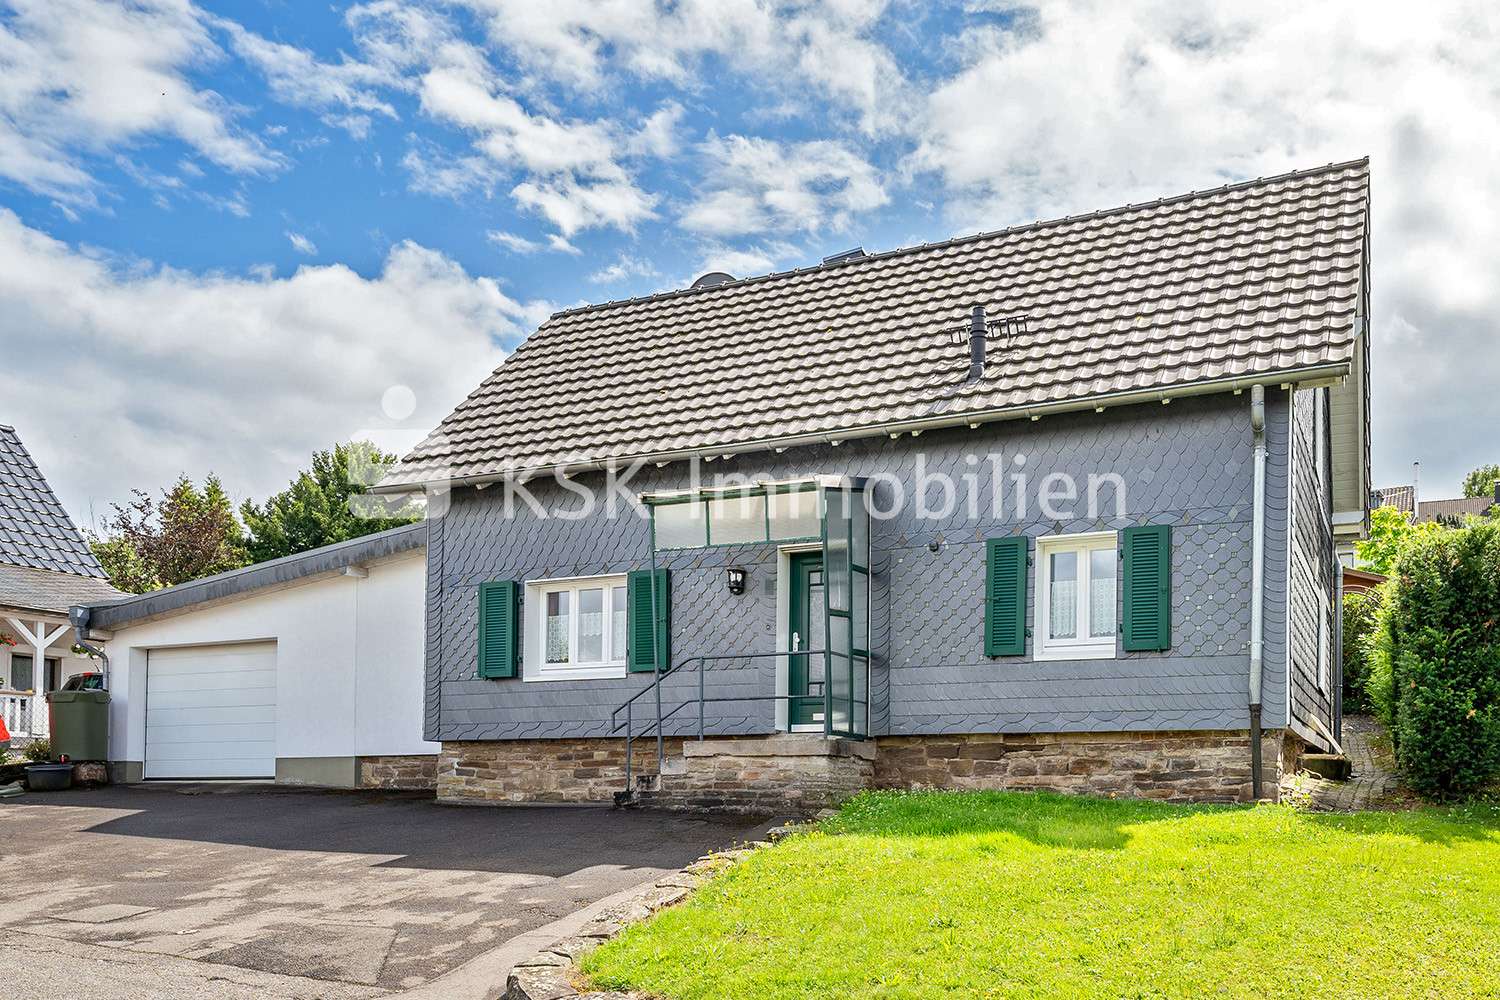 120776 Frontansicht  - Einfamilienhaus in 51789 Lindlar mit 91m² kaufen